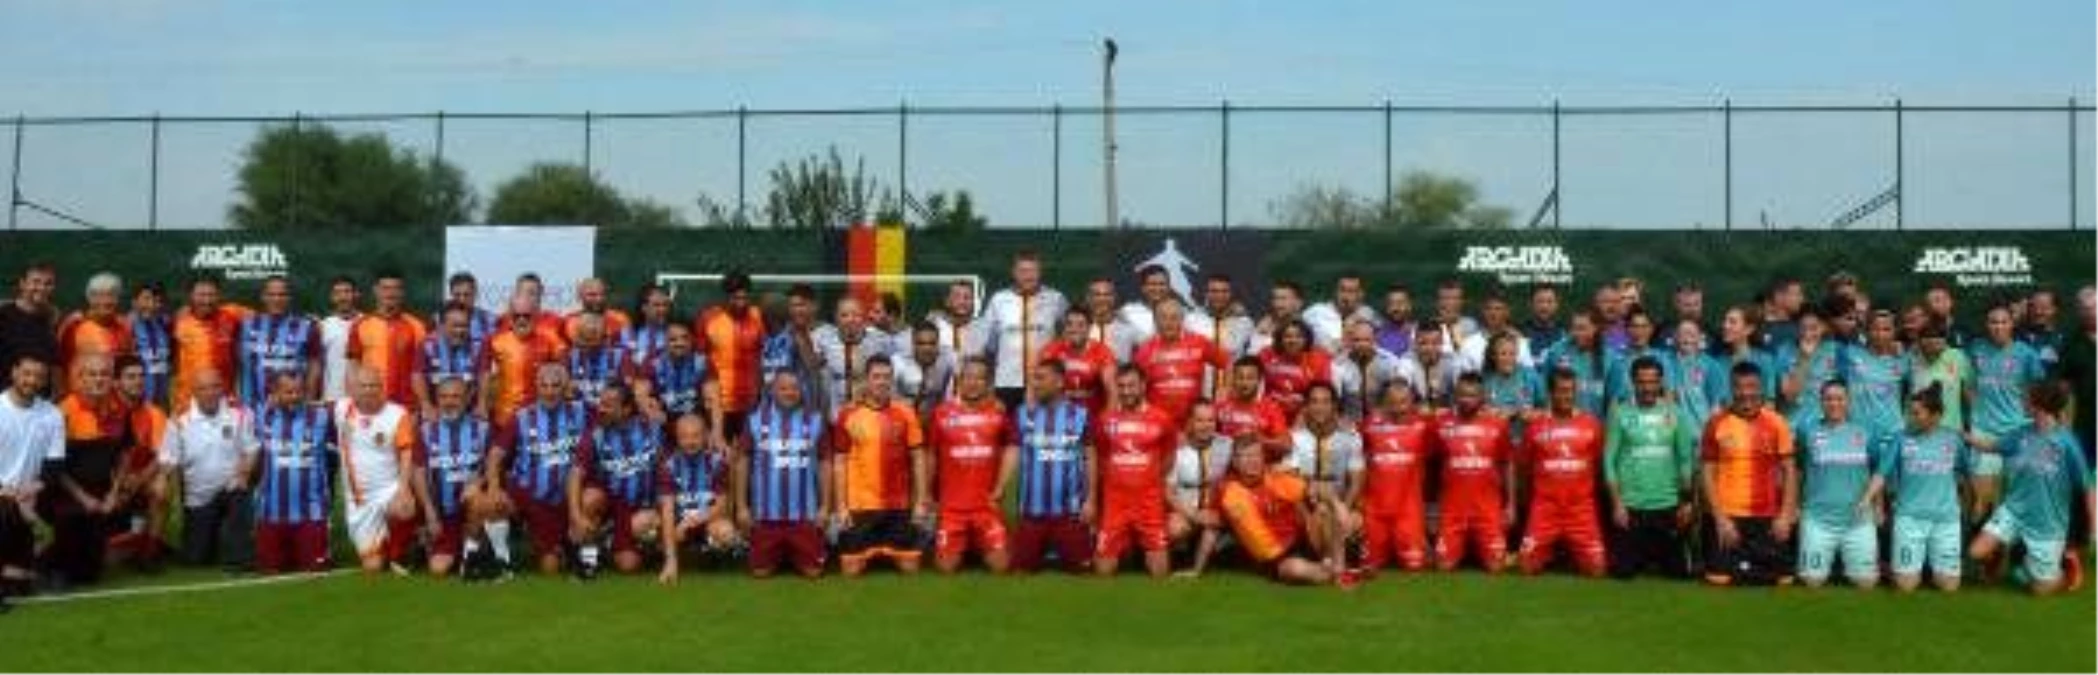 Alman Dostluk Futbol Turnuvası başladı